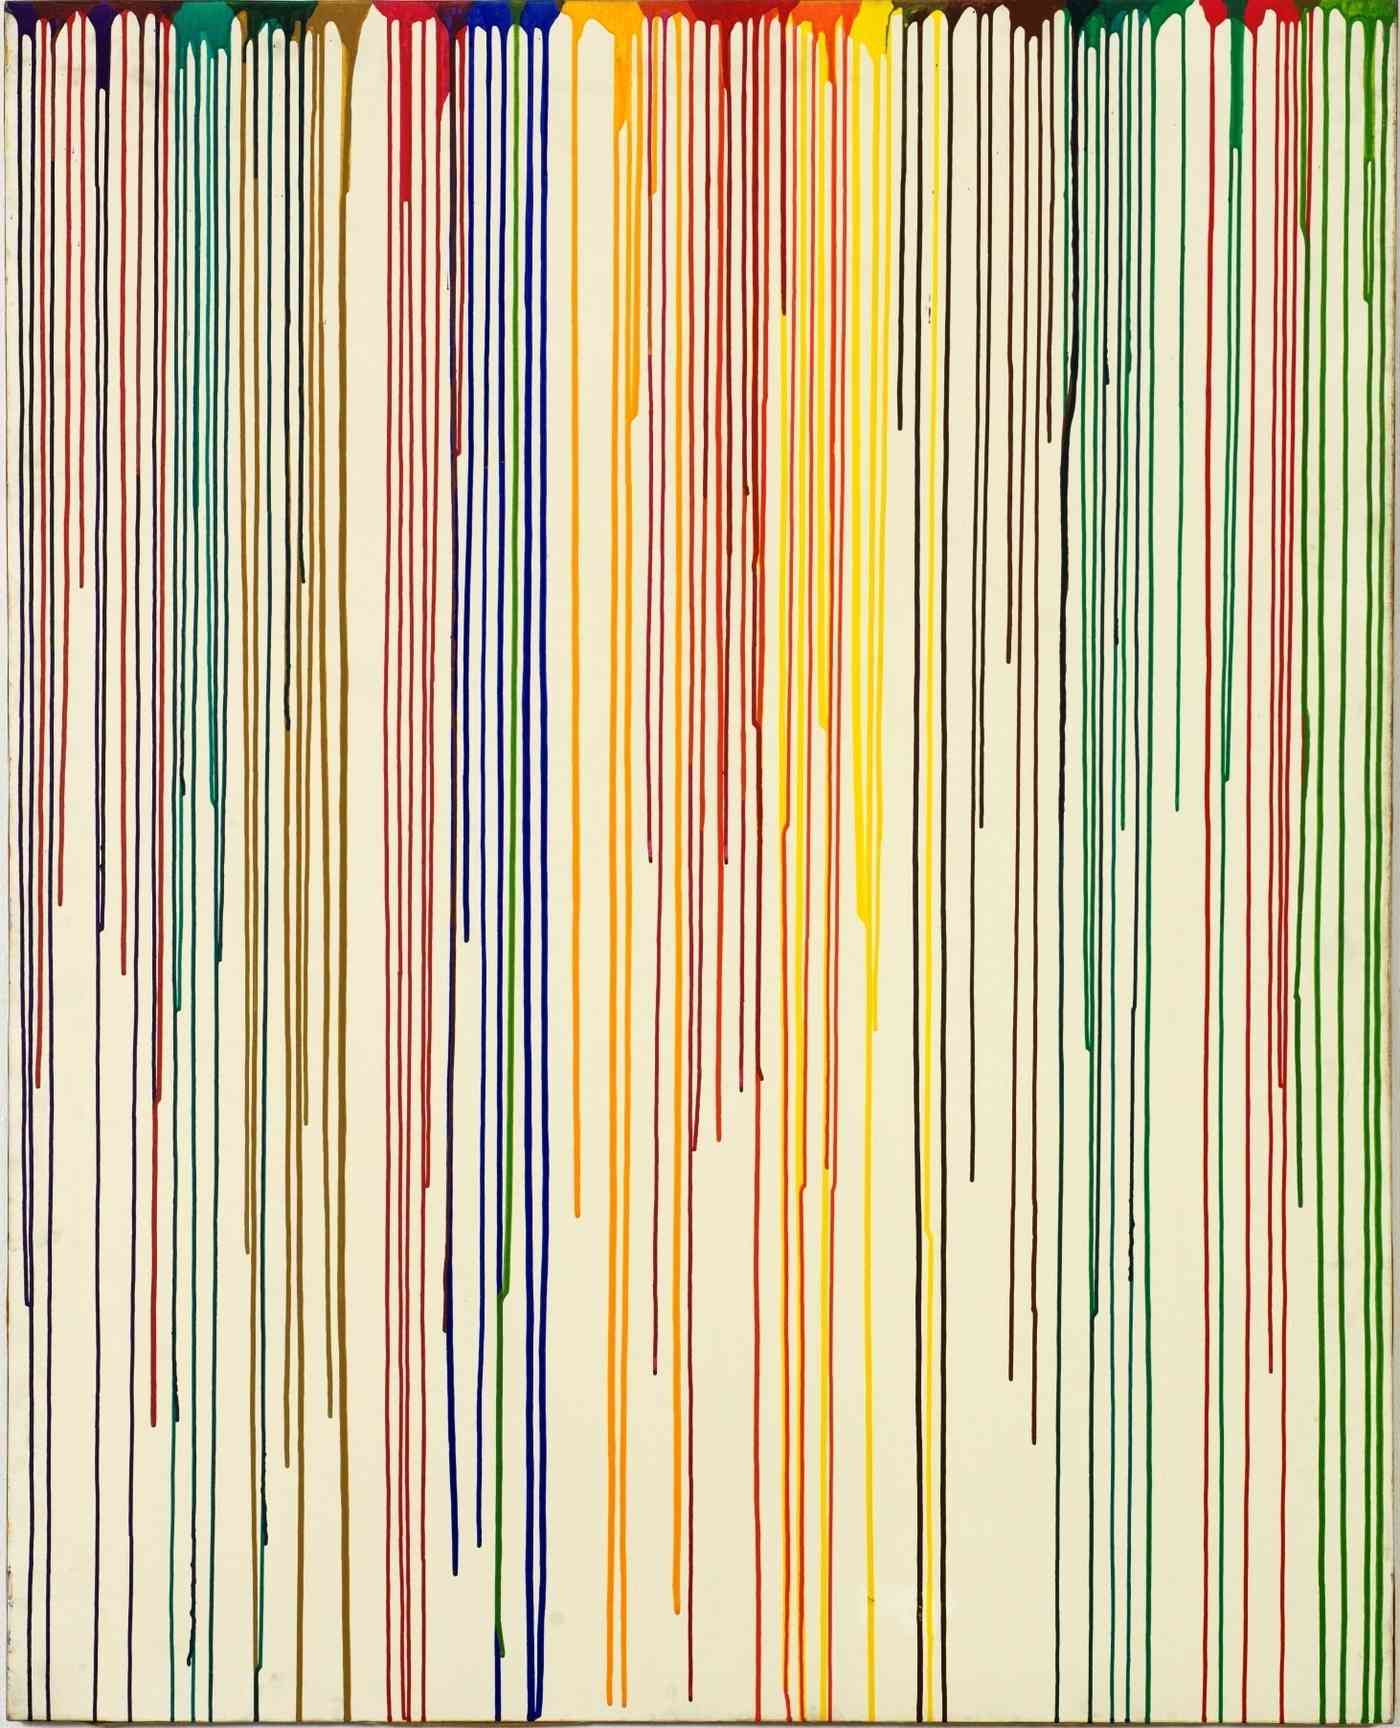 이향미, 색자체color7810, 1978, Acrylic on canvas, 162x130.3cm (피비갤러리 제공)